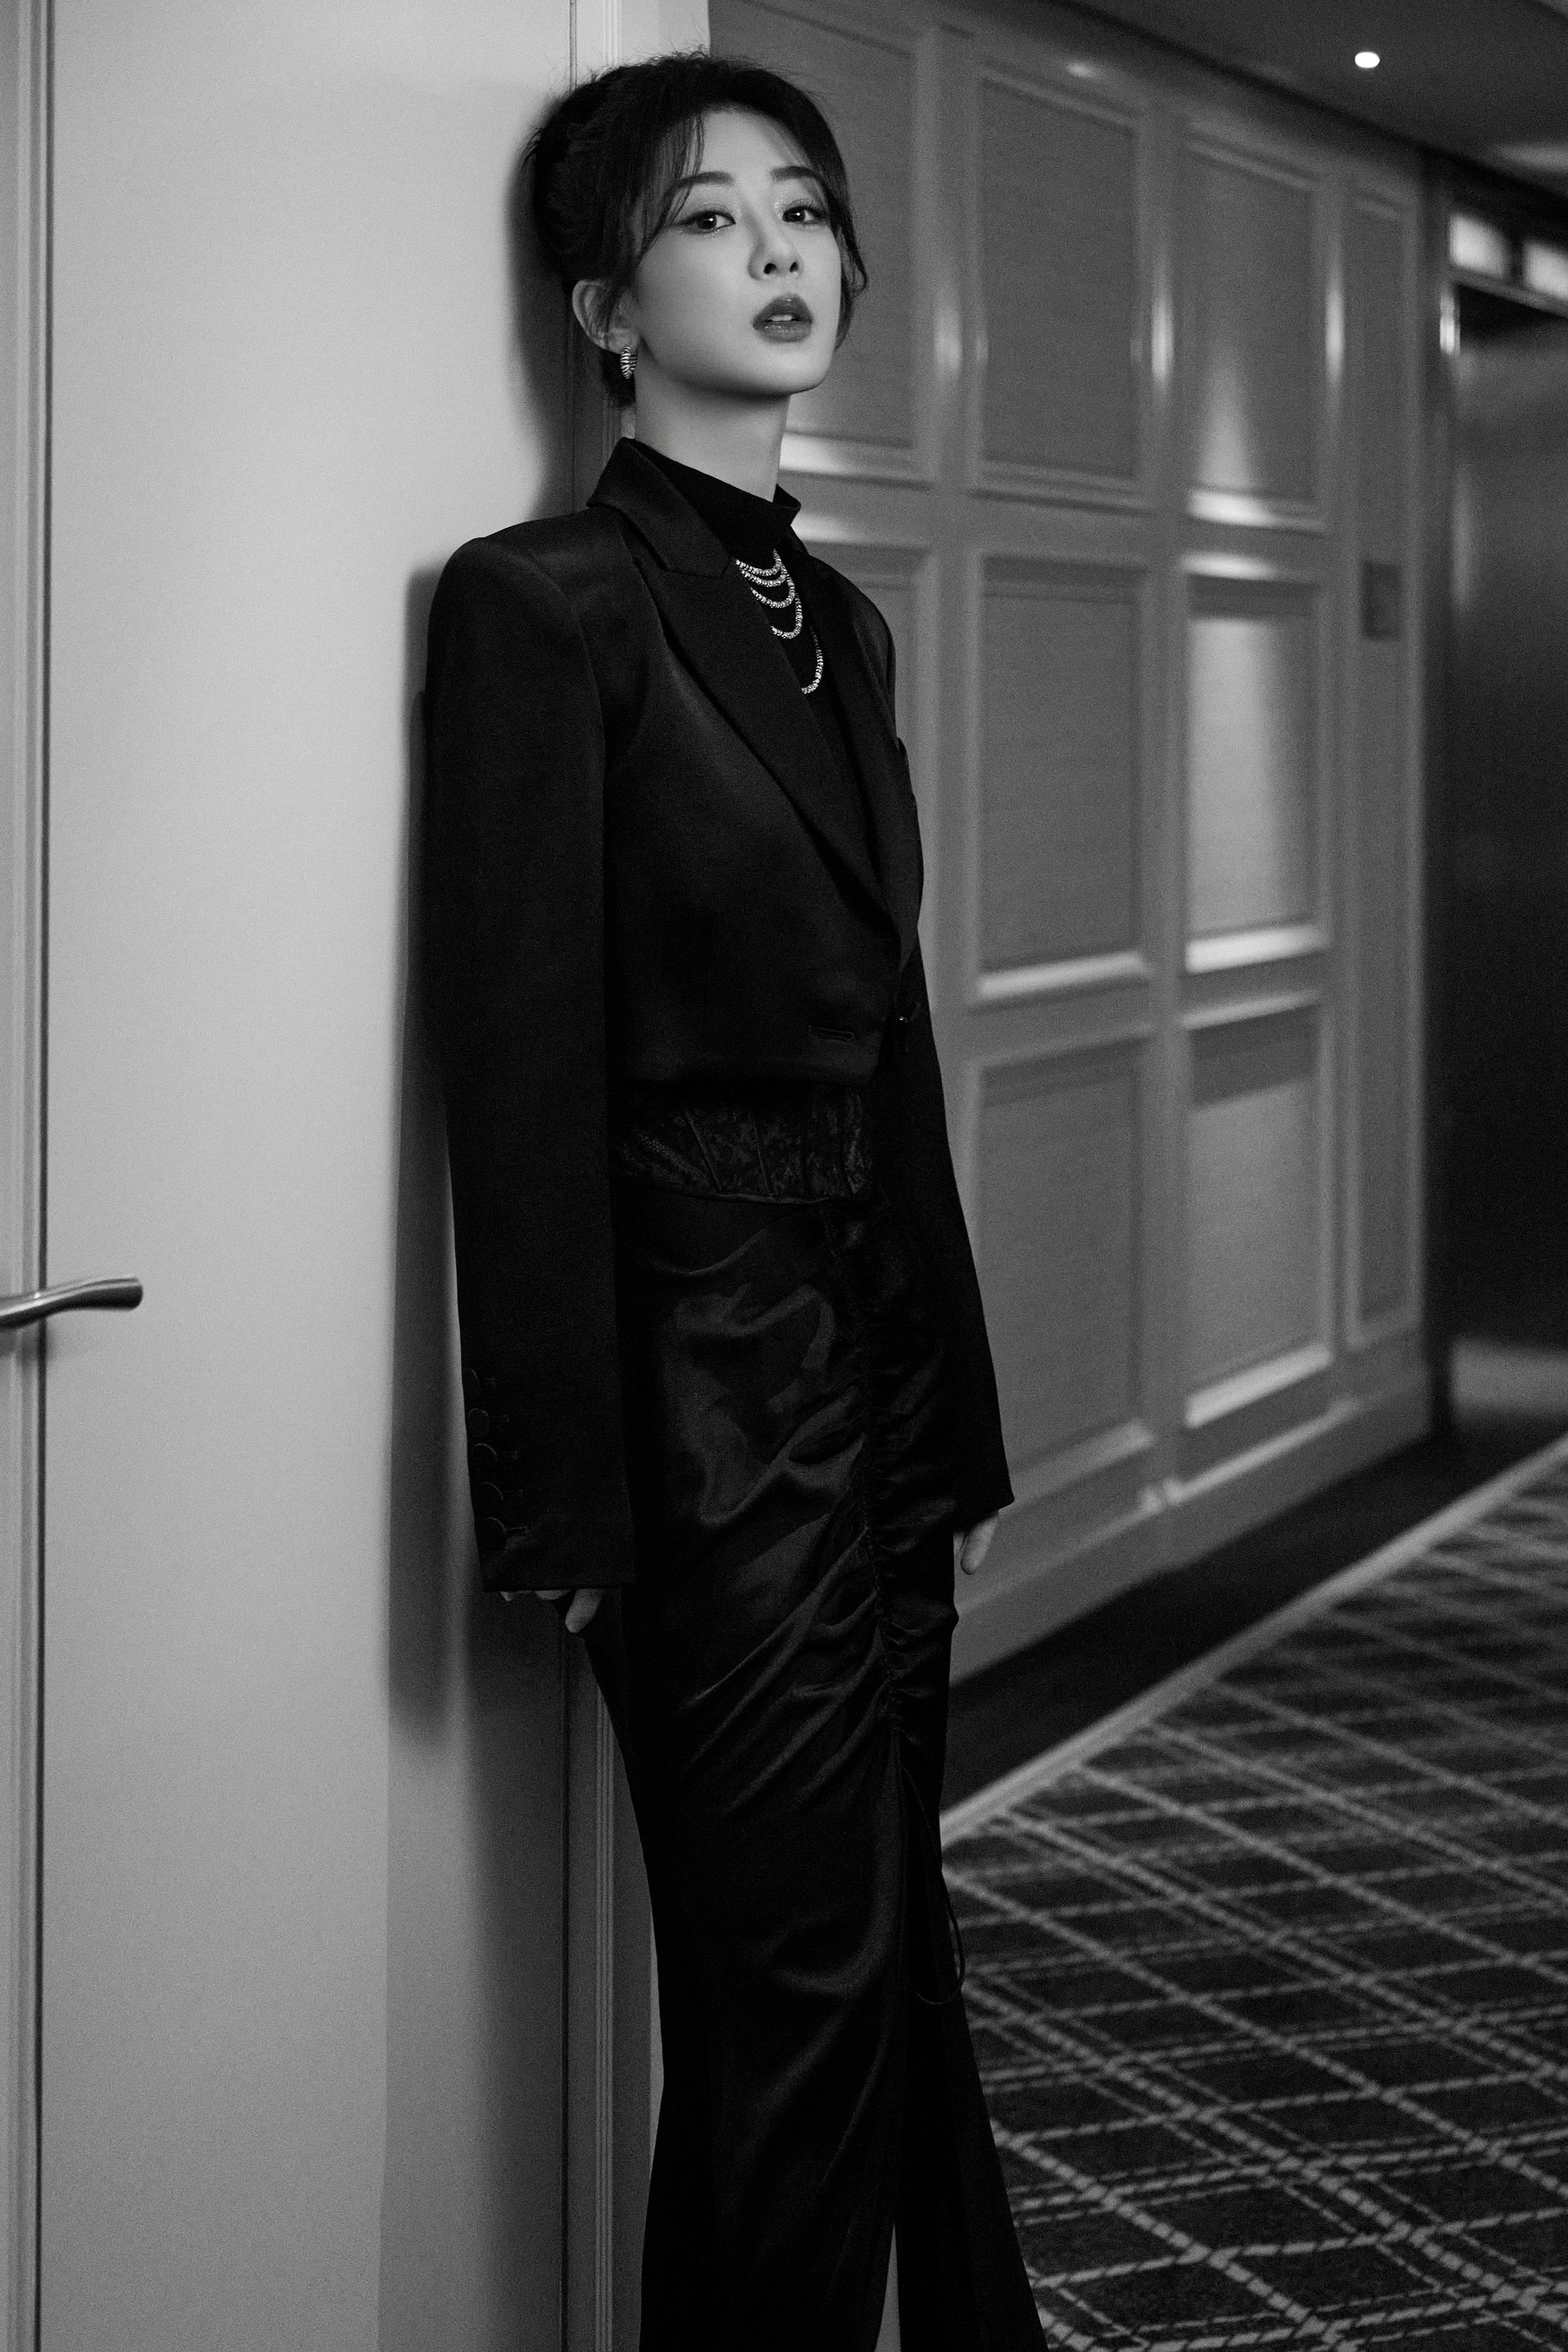 腾讯视频星光大赏 杨紫黑色外套加蕾丝镂空连衣裙无限魅力,1 (8)